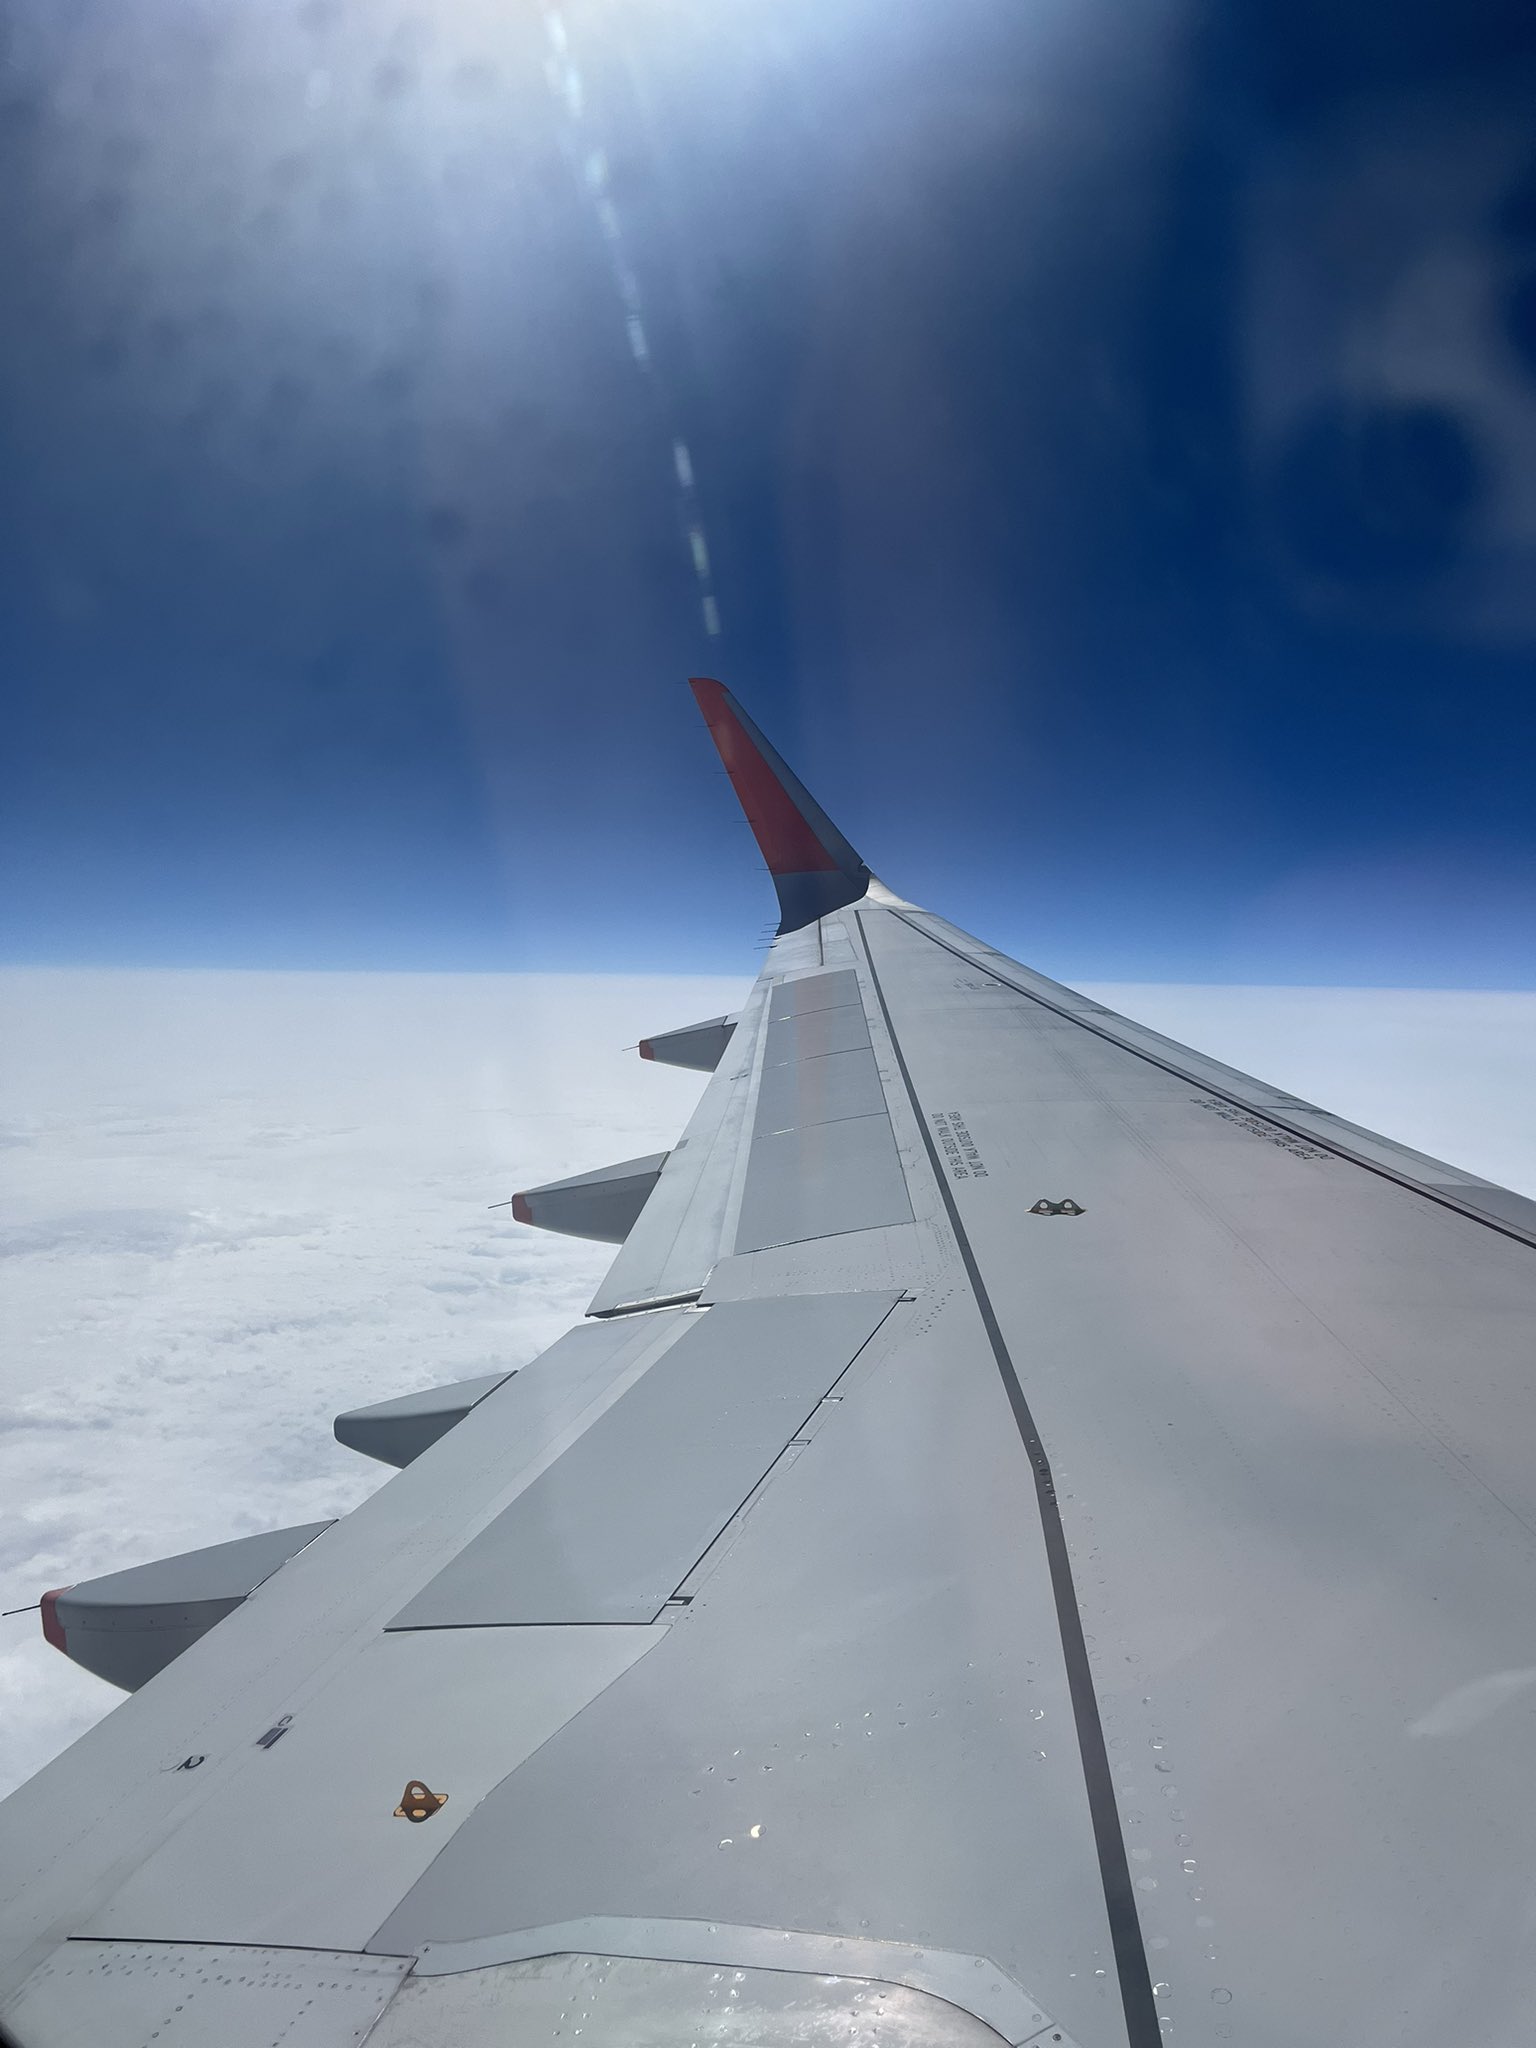 佐藤賢治 Such A Pretty View 飛行機の窓から 飛行機 飛行機写真 夕焼け 夕焼け空 飛行機好きな人と繋がりたい 飛行機からの景色 Japan Airplane Photography T Co F60uarmqnh Twitter